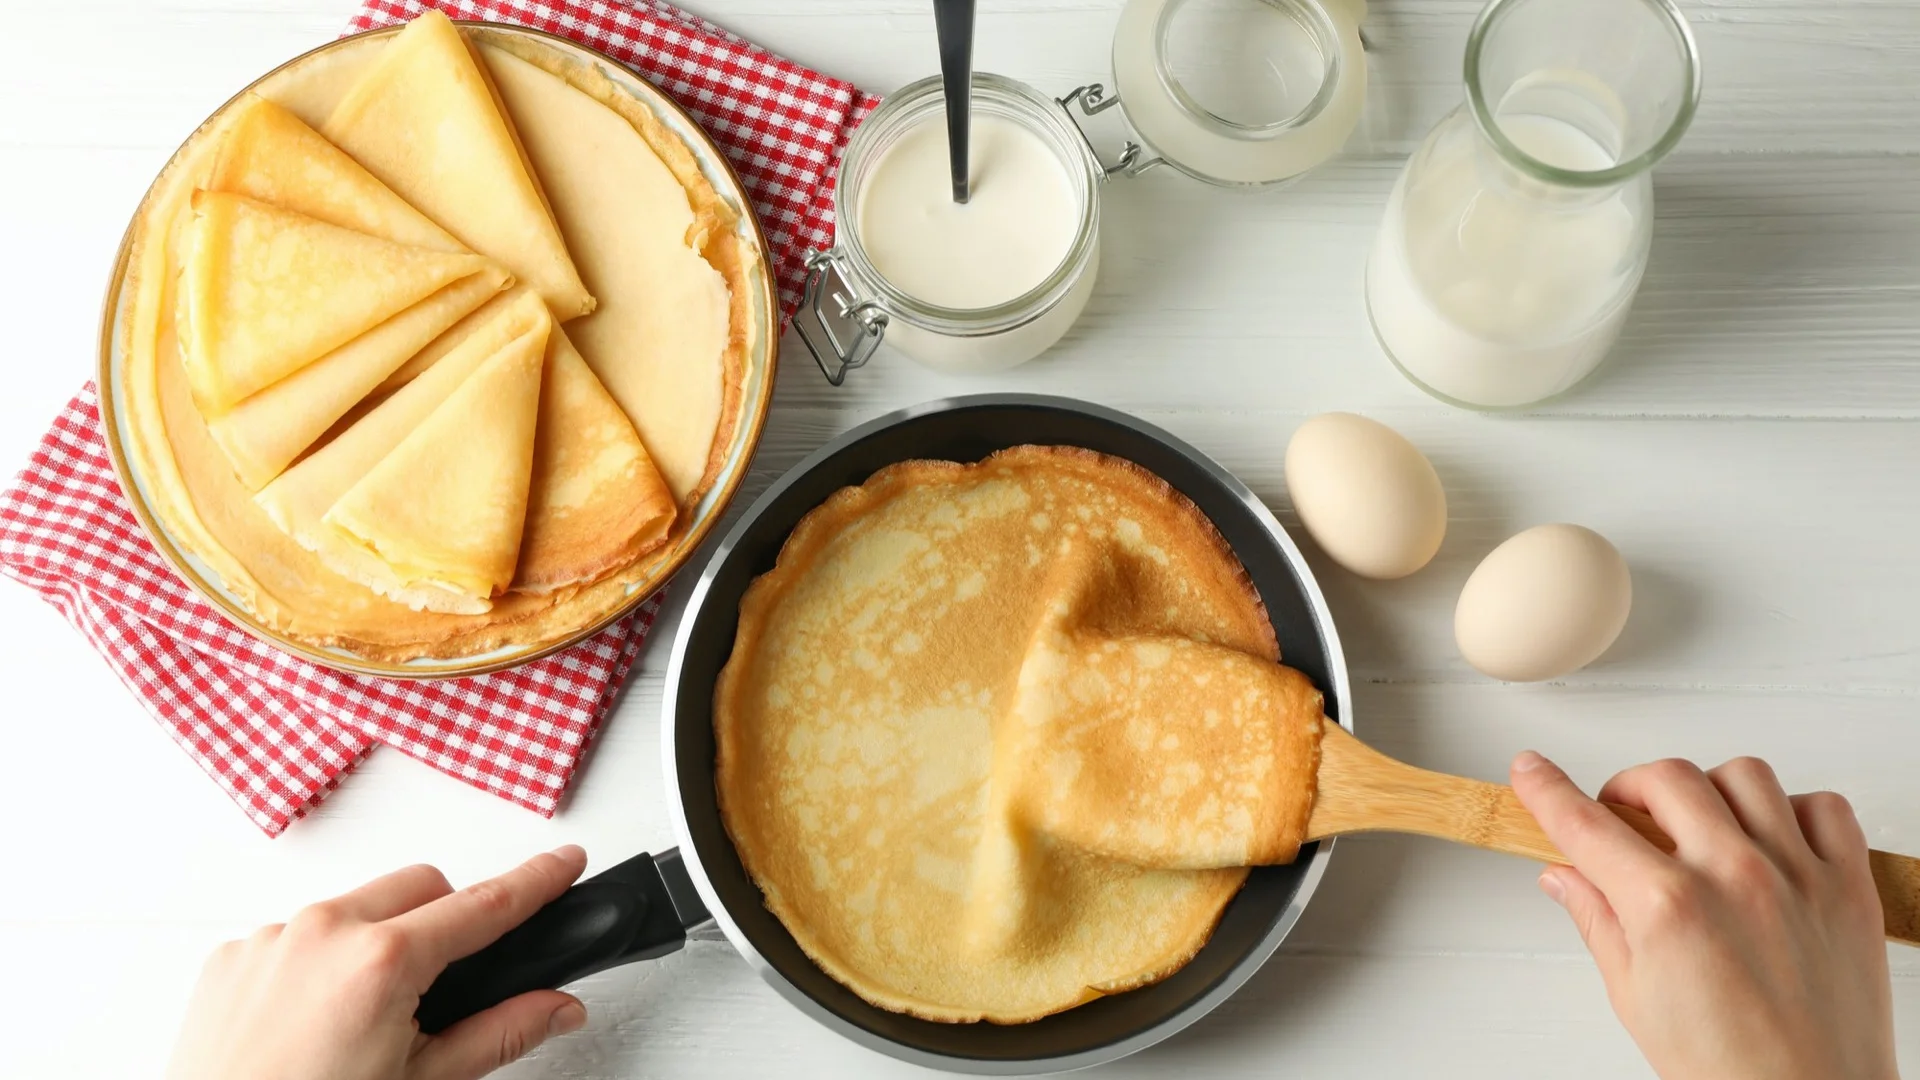 cooking breakfast 1/8 cup measure Pancake batter